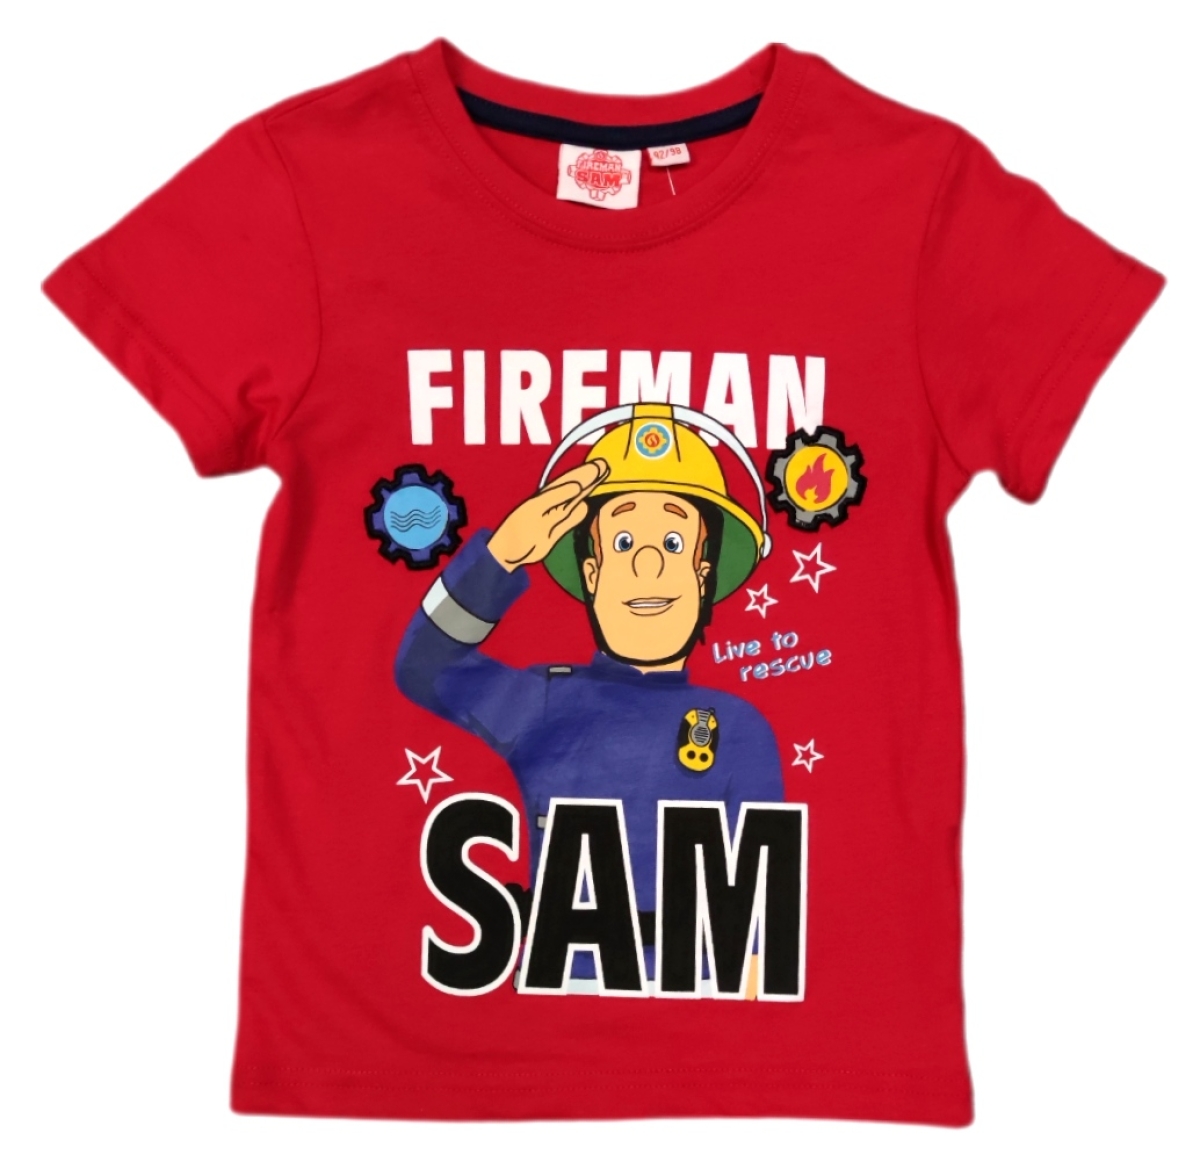 Schickes Jungen Shirt mit Sam dem Feuerwehrmann. Rotes T-Shirt mit Rundhalsausschnitt und einem Schiftzug "Fireman Sam - live to rescue".